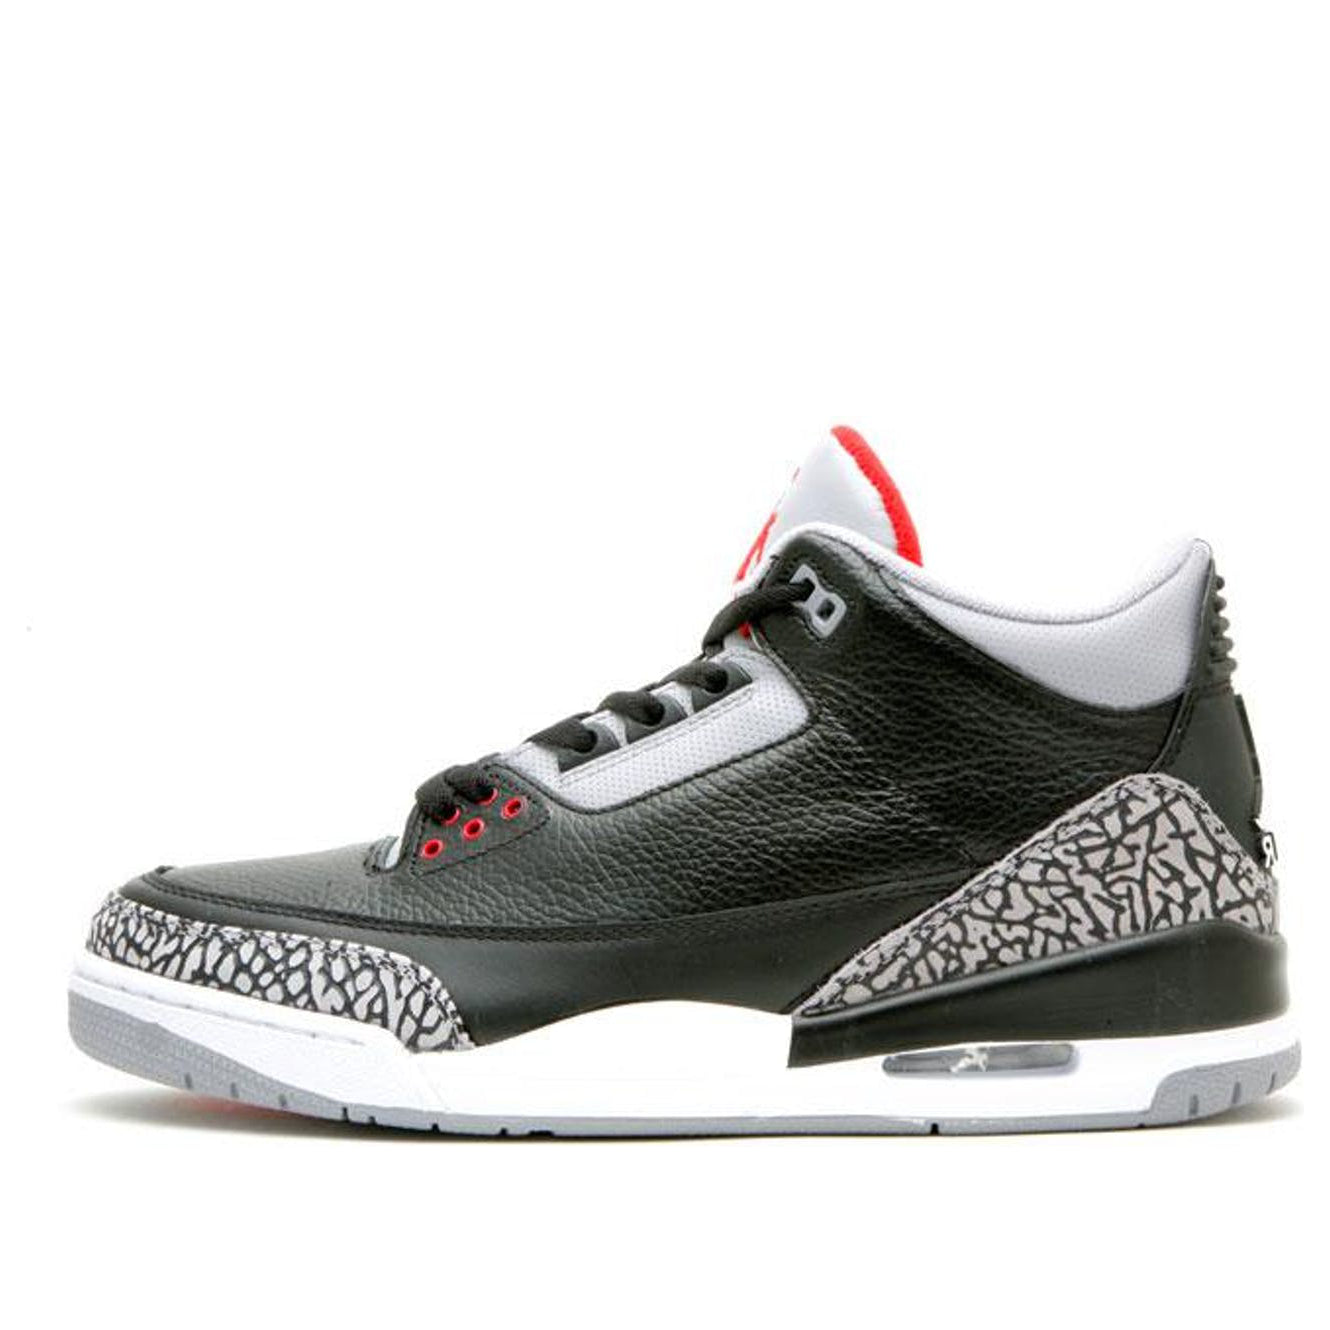 Air Jordan 3 Retro 'Countdown Pack' Black/Cement Grey 340254-061